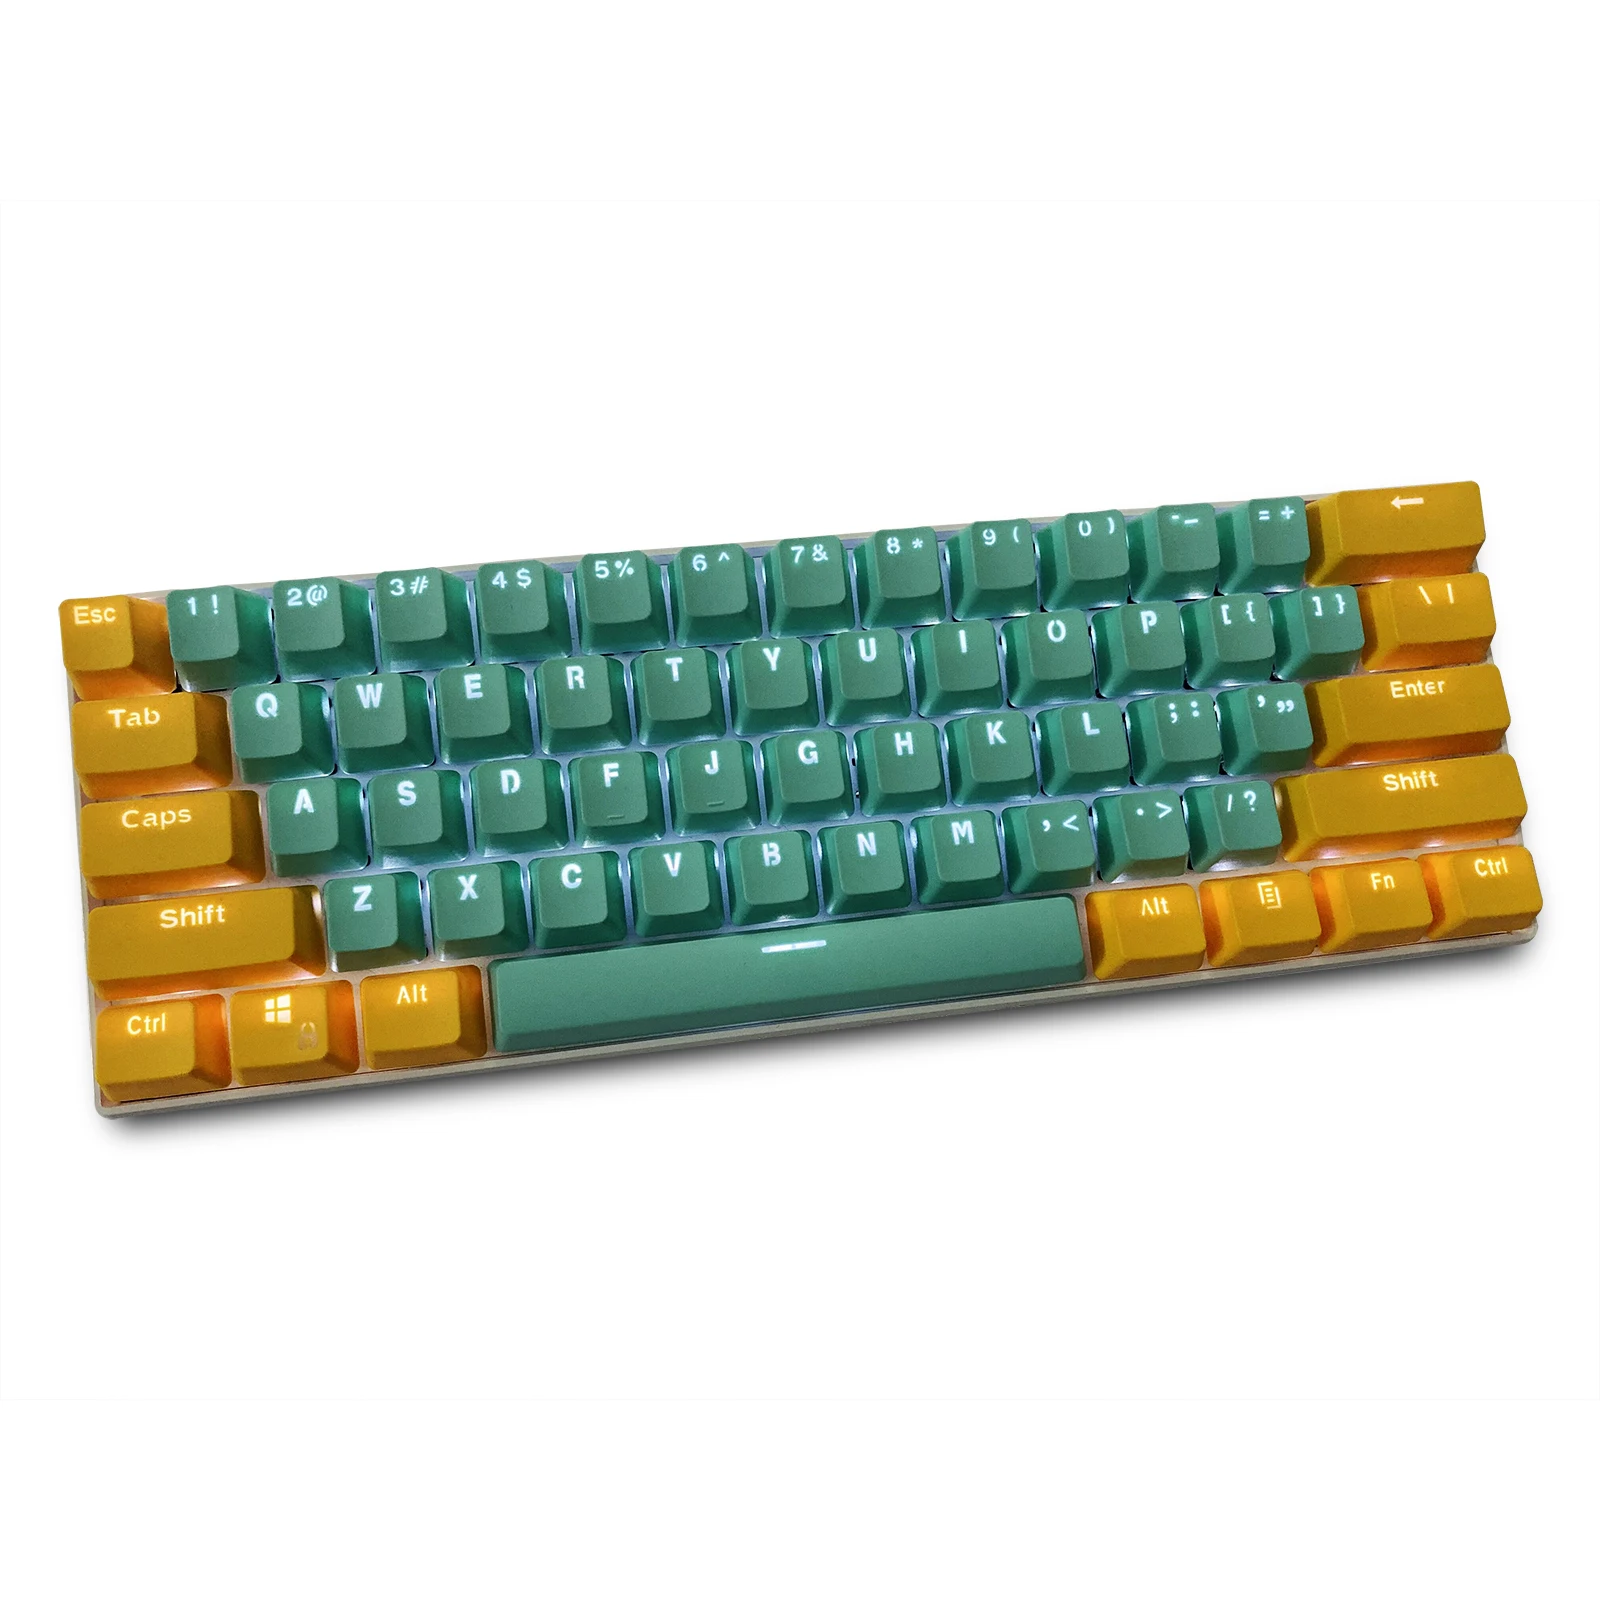 

Колпачки для клавиш RK 61, колпачки для клавиш OEM из материала PBT, двухцветные механические колпачки для клавиатуры с подсветкой (продаются тол...